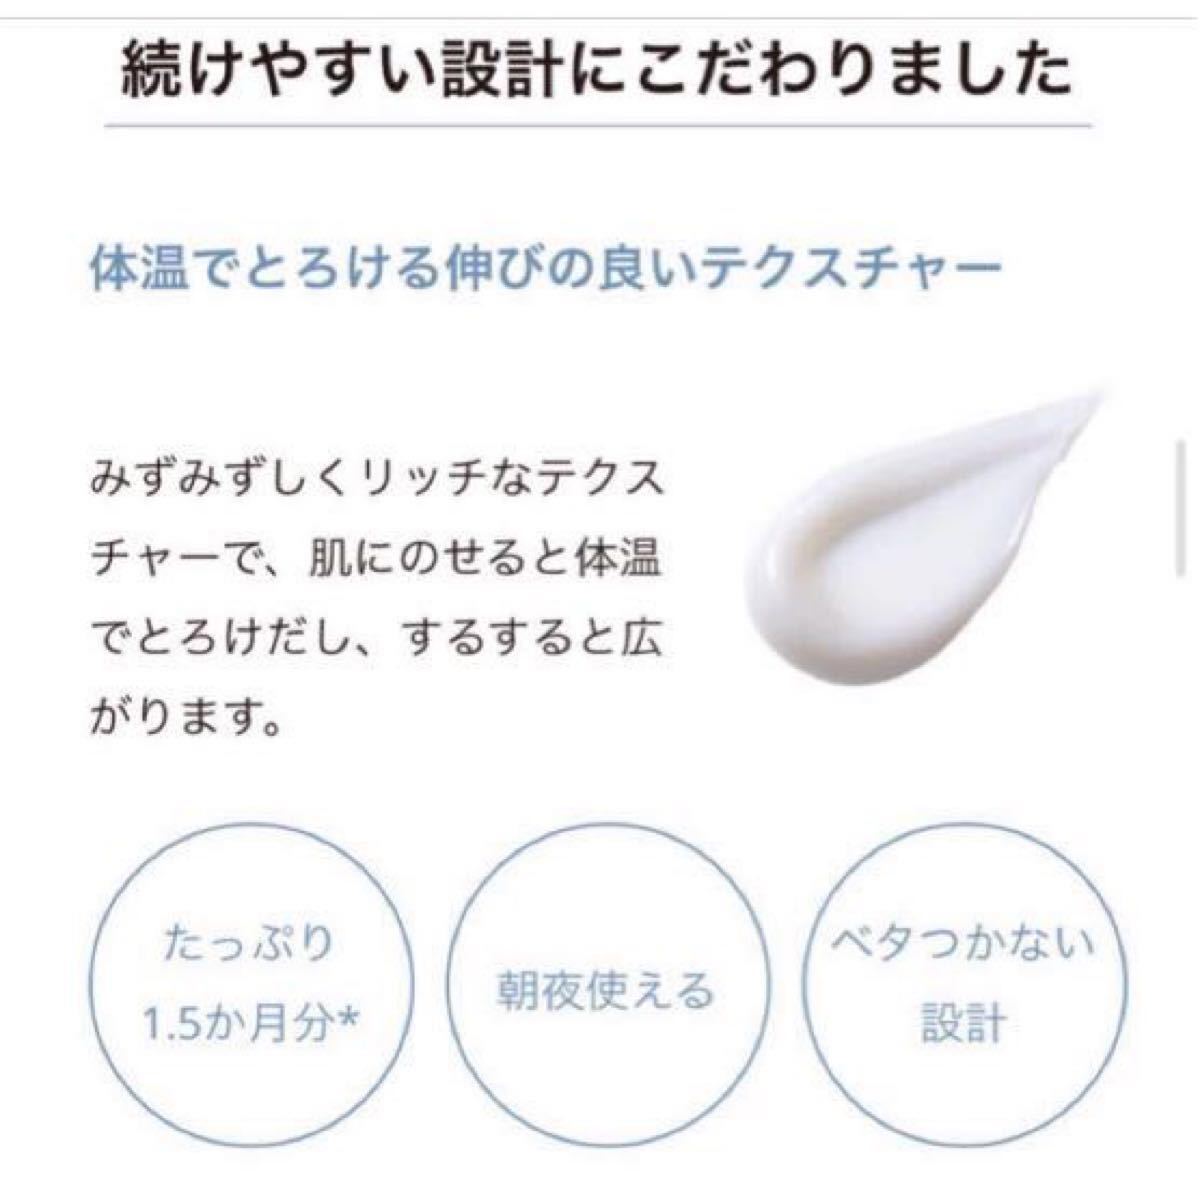 【リンクルホワイトエッセンス】30g・薬用美容液・シワ改善・美白・美容液・オルビス・ORBIS・新品る